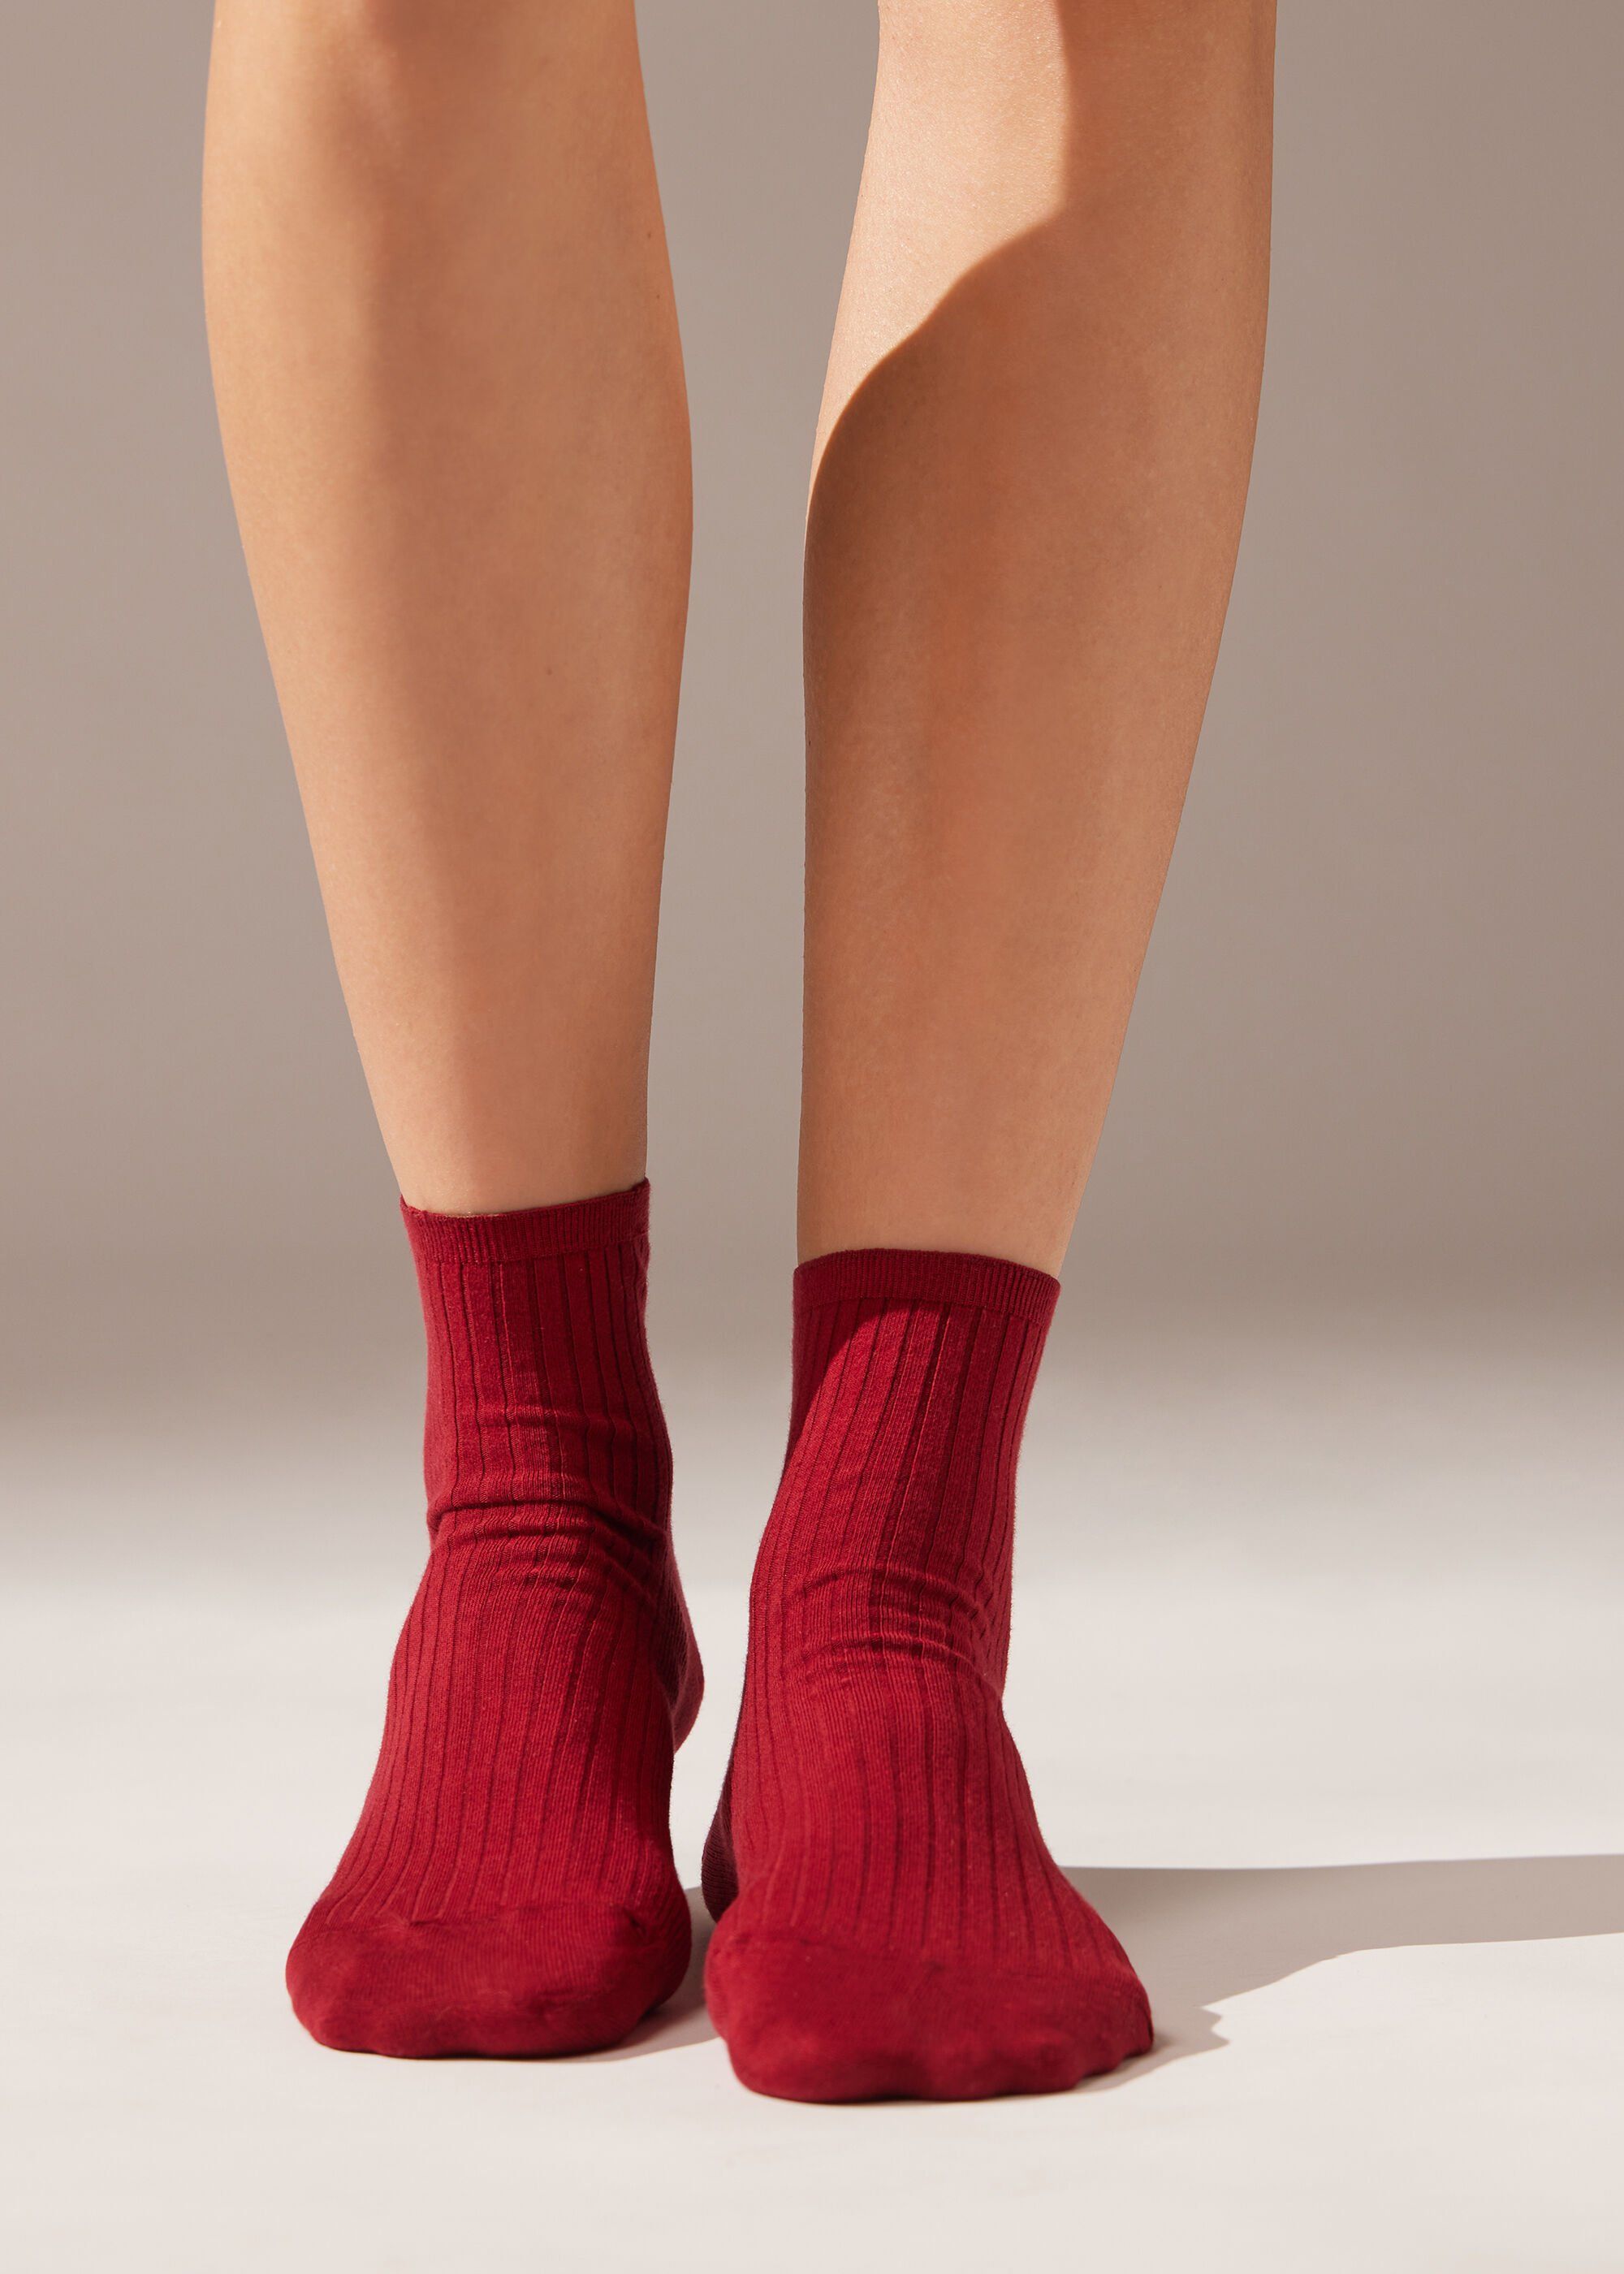 Ribbed Short Socks | Calzedonia US